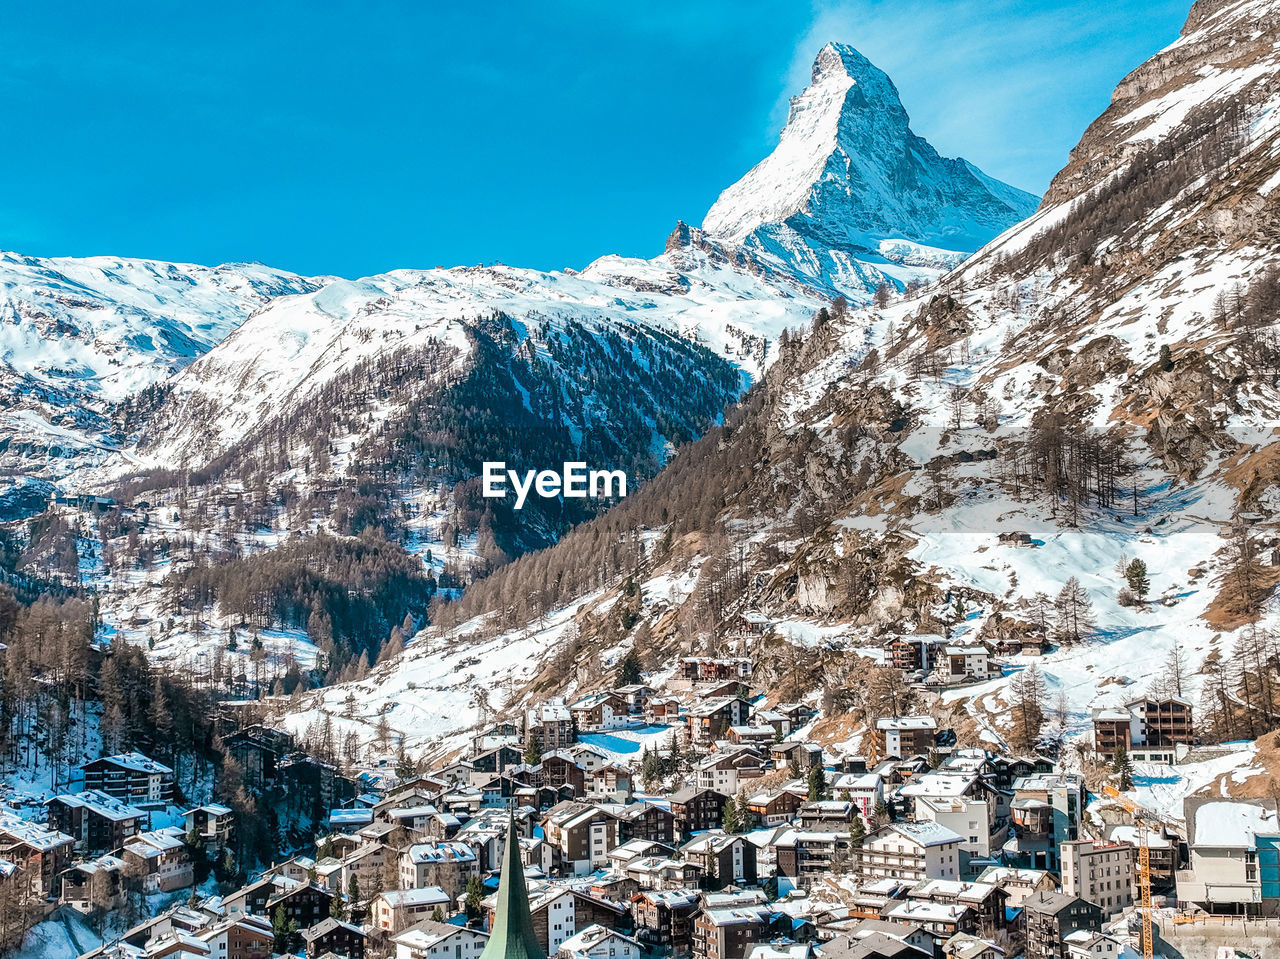 Aerial view on zermatt valley and matterhorn peak